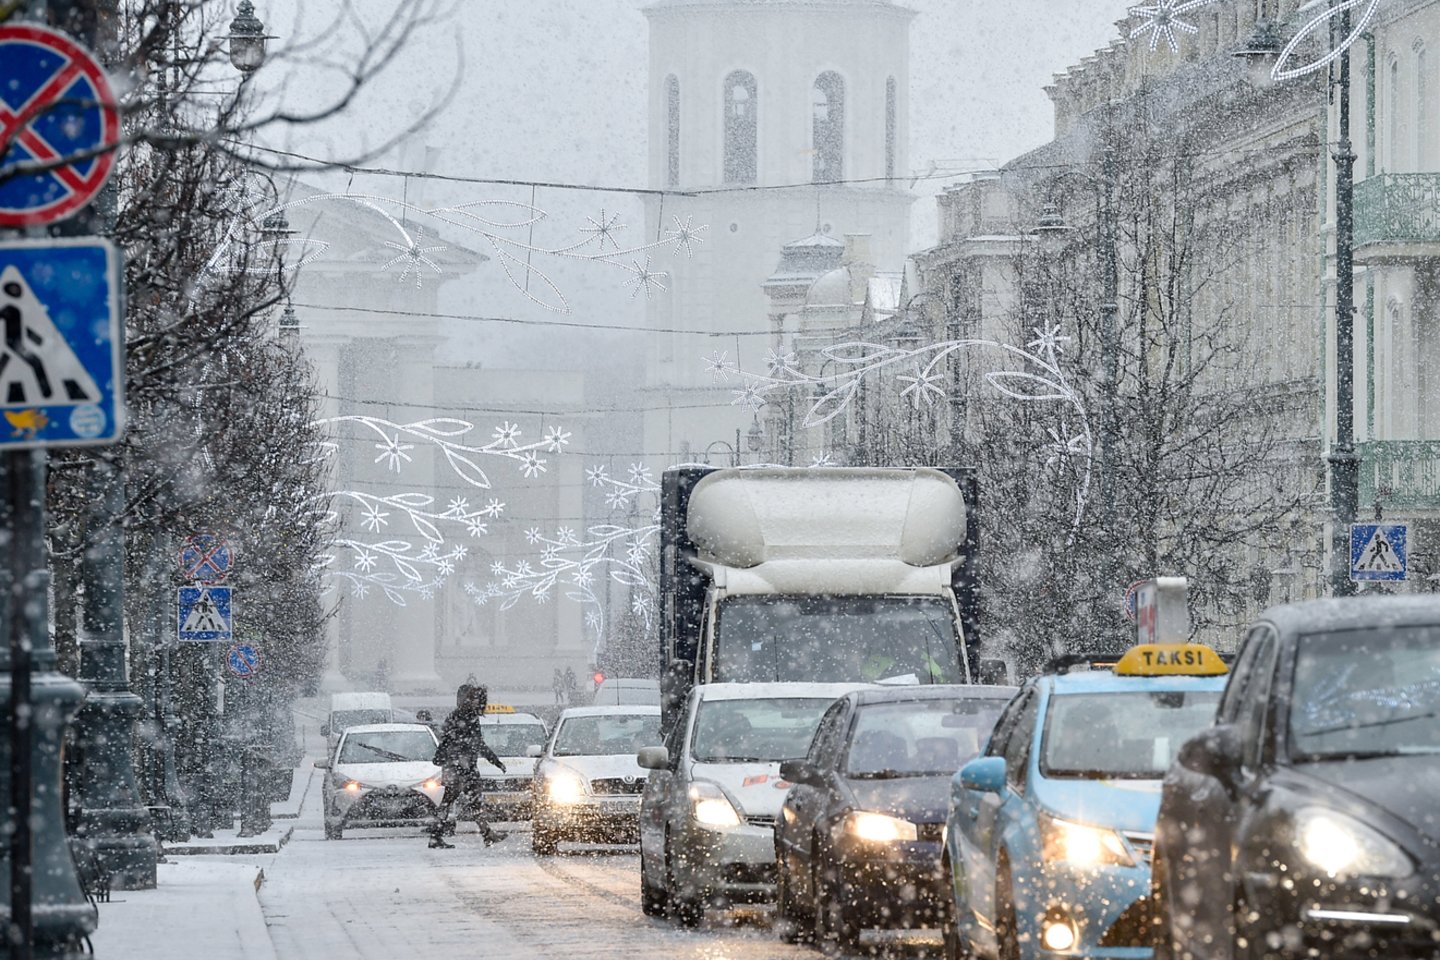 Pietų Lietuvoje eismo sąlygos ketvirtadienio rytą išlieka sudėtingos dėl buvusio ar tebesitęsiančio snygio, įspėja kelininkai.<br>V.Ščiavinsko nuotr.